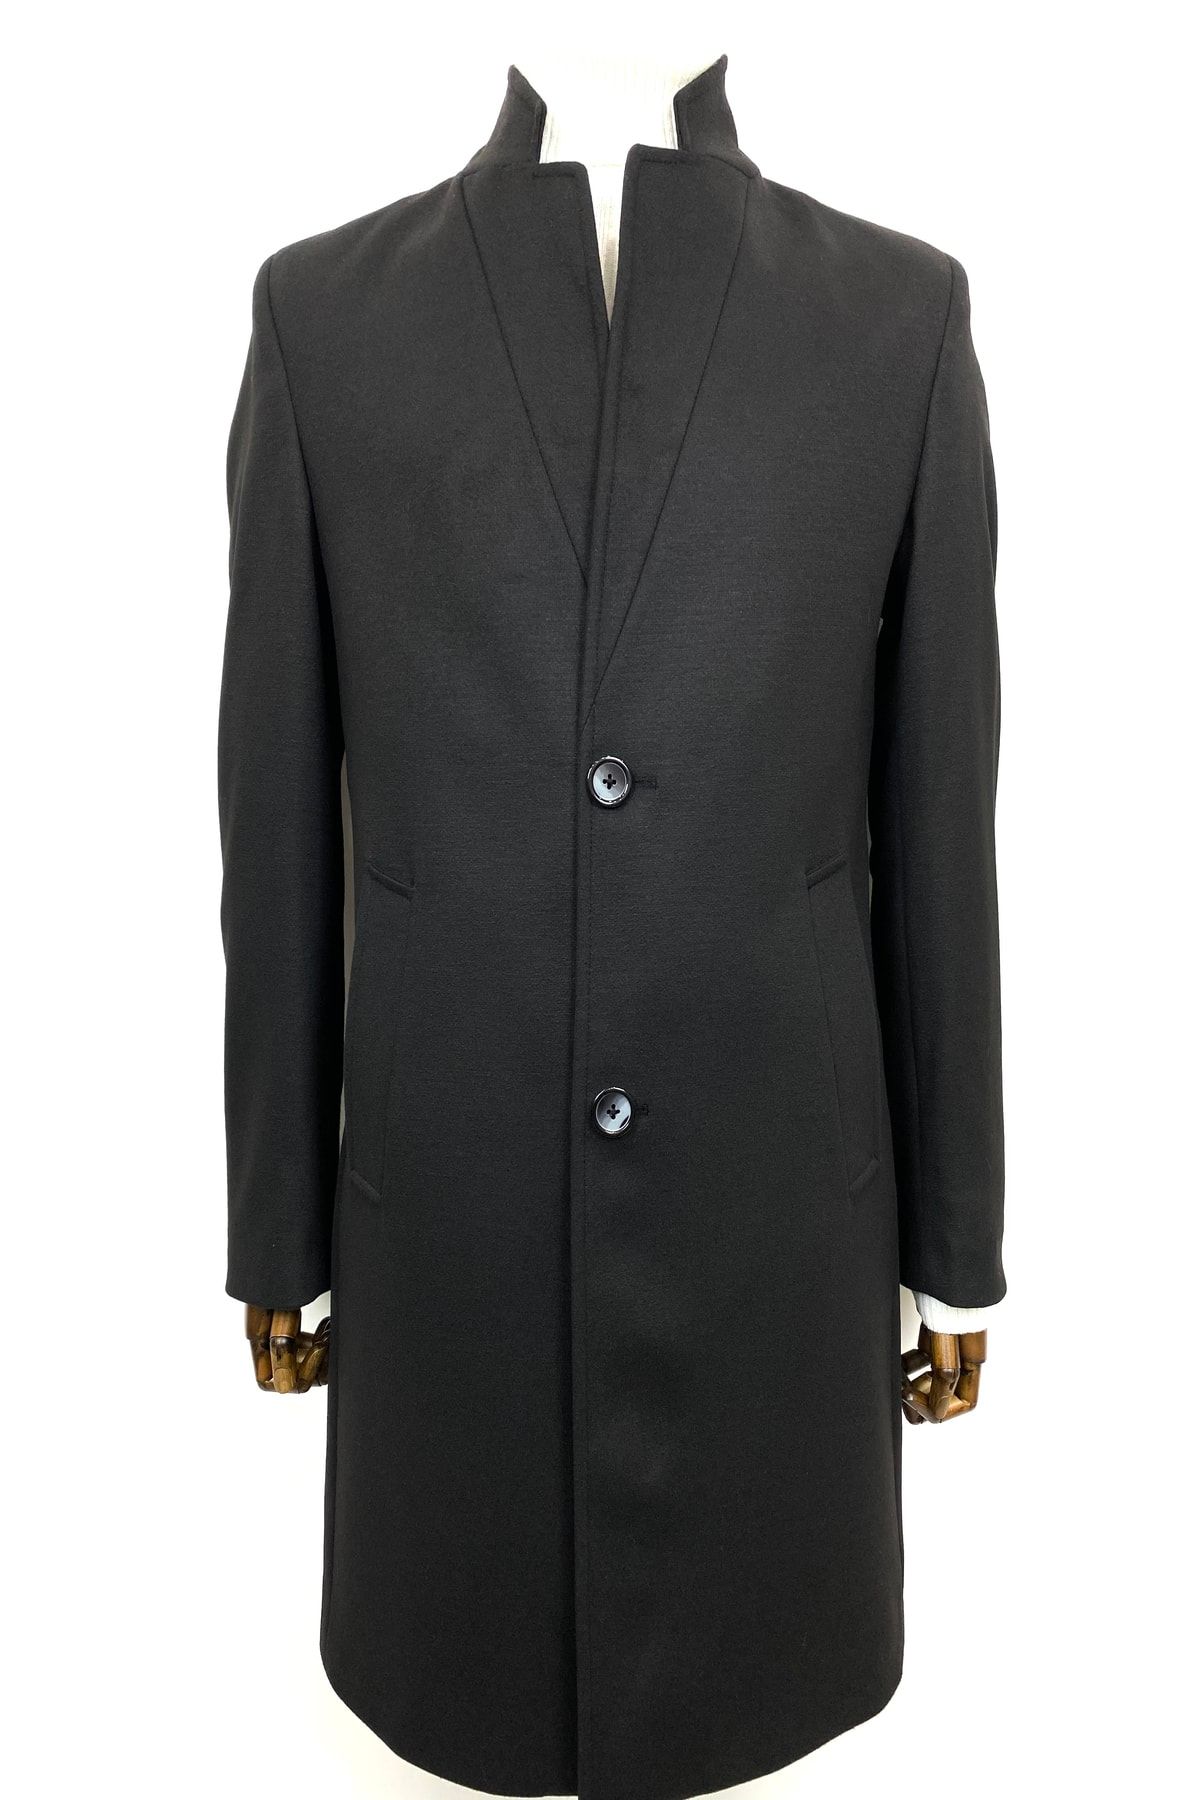 ŞAN GİYİM 3751 Erkek Poliviskon Siyah Açık Yaka Kısa Palto